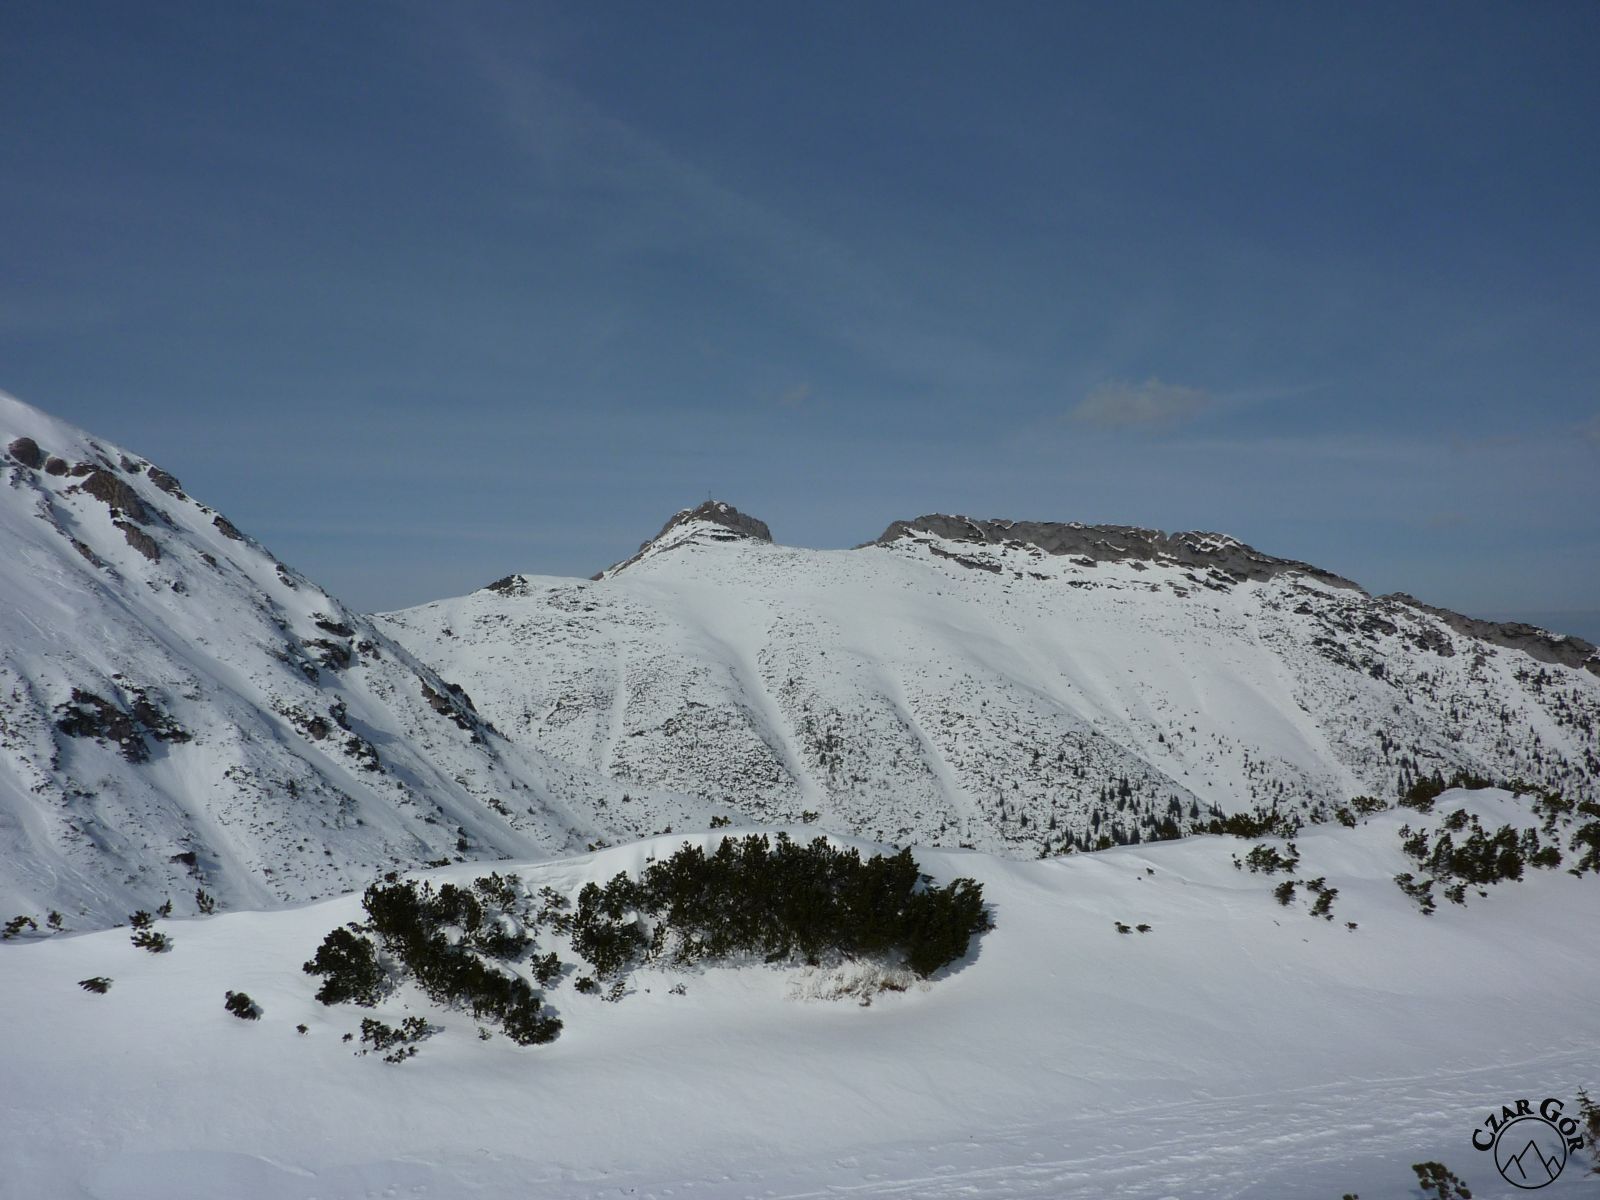 Wycieczka skitourowa na Łopatę. W Dolinie Kondratowej, widok na szczyt Giewontu i Długi Giewont